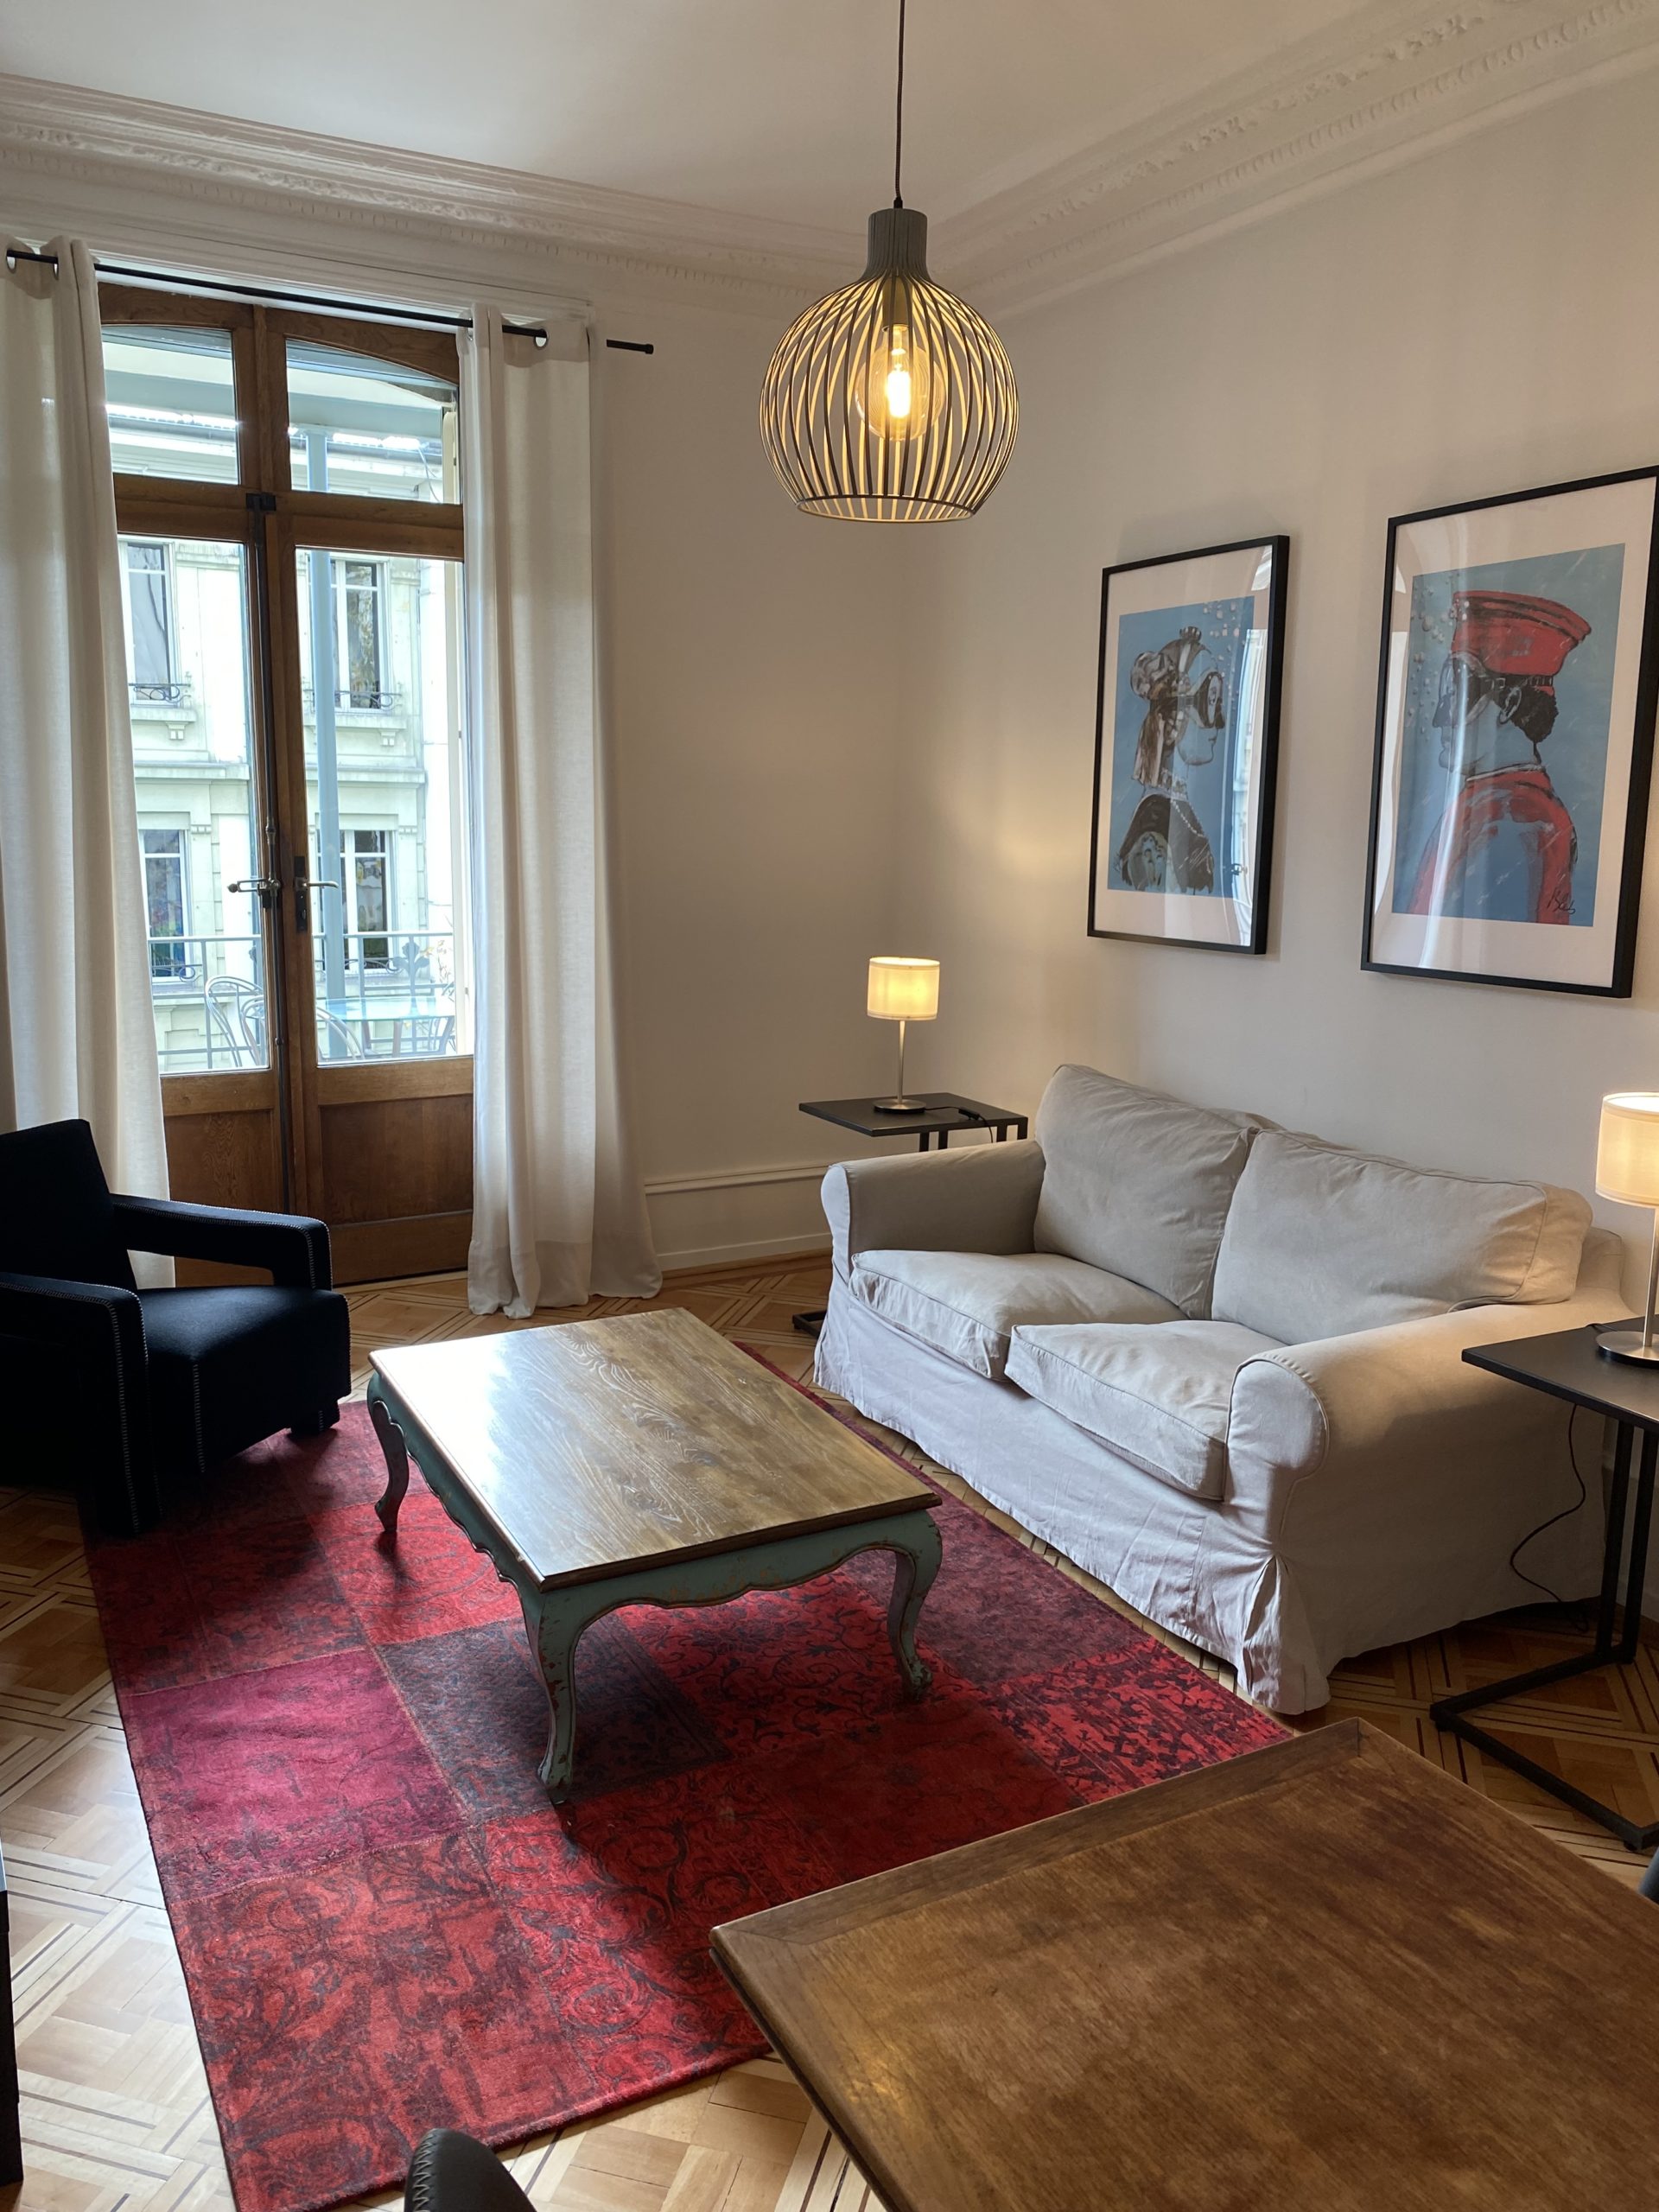 Appartement meublé de 3.5 pièces, Avenue Sainte-Luce 18 à Lausanne (lot 3) 17